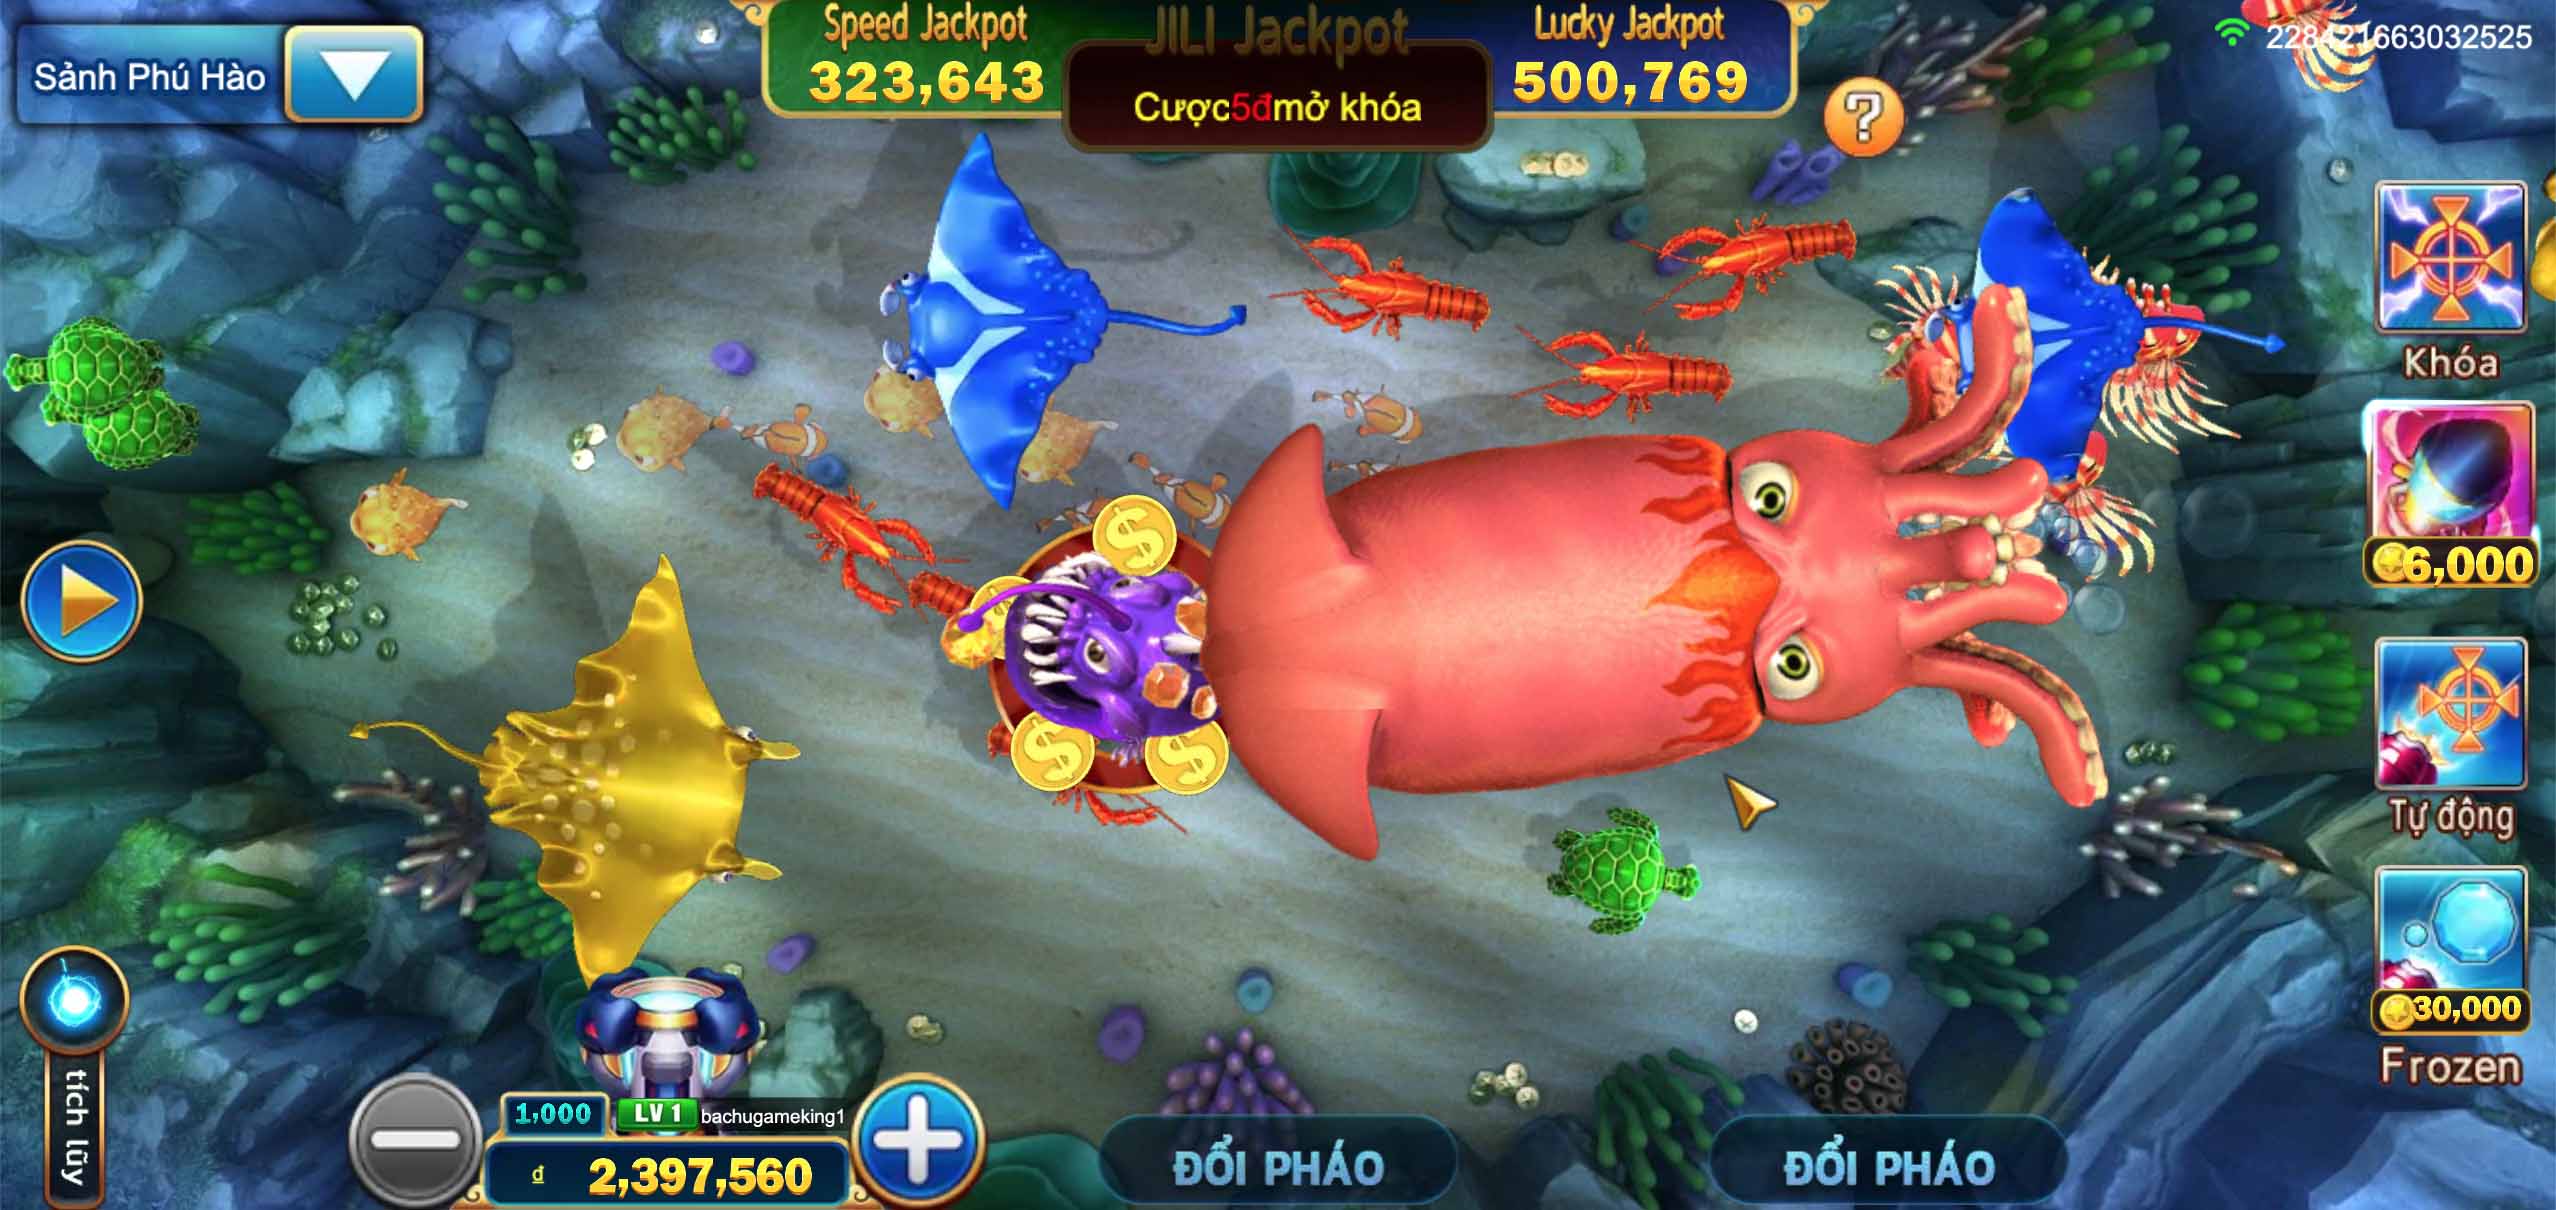 Bắn cá Kingfun: Hướng dẫn chơi game Câu cá độc đắc